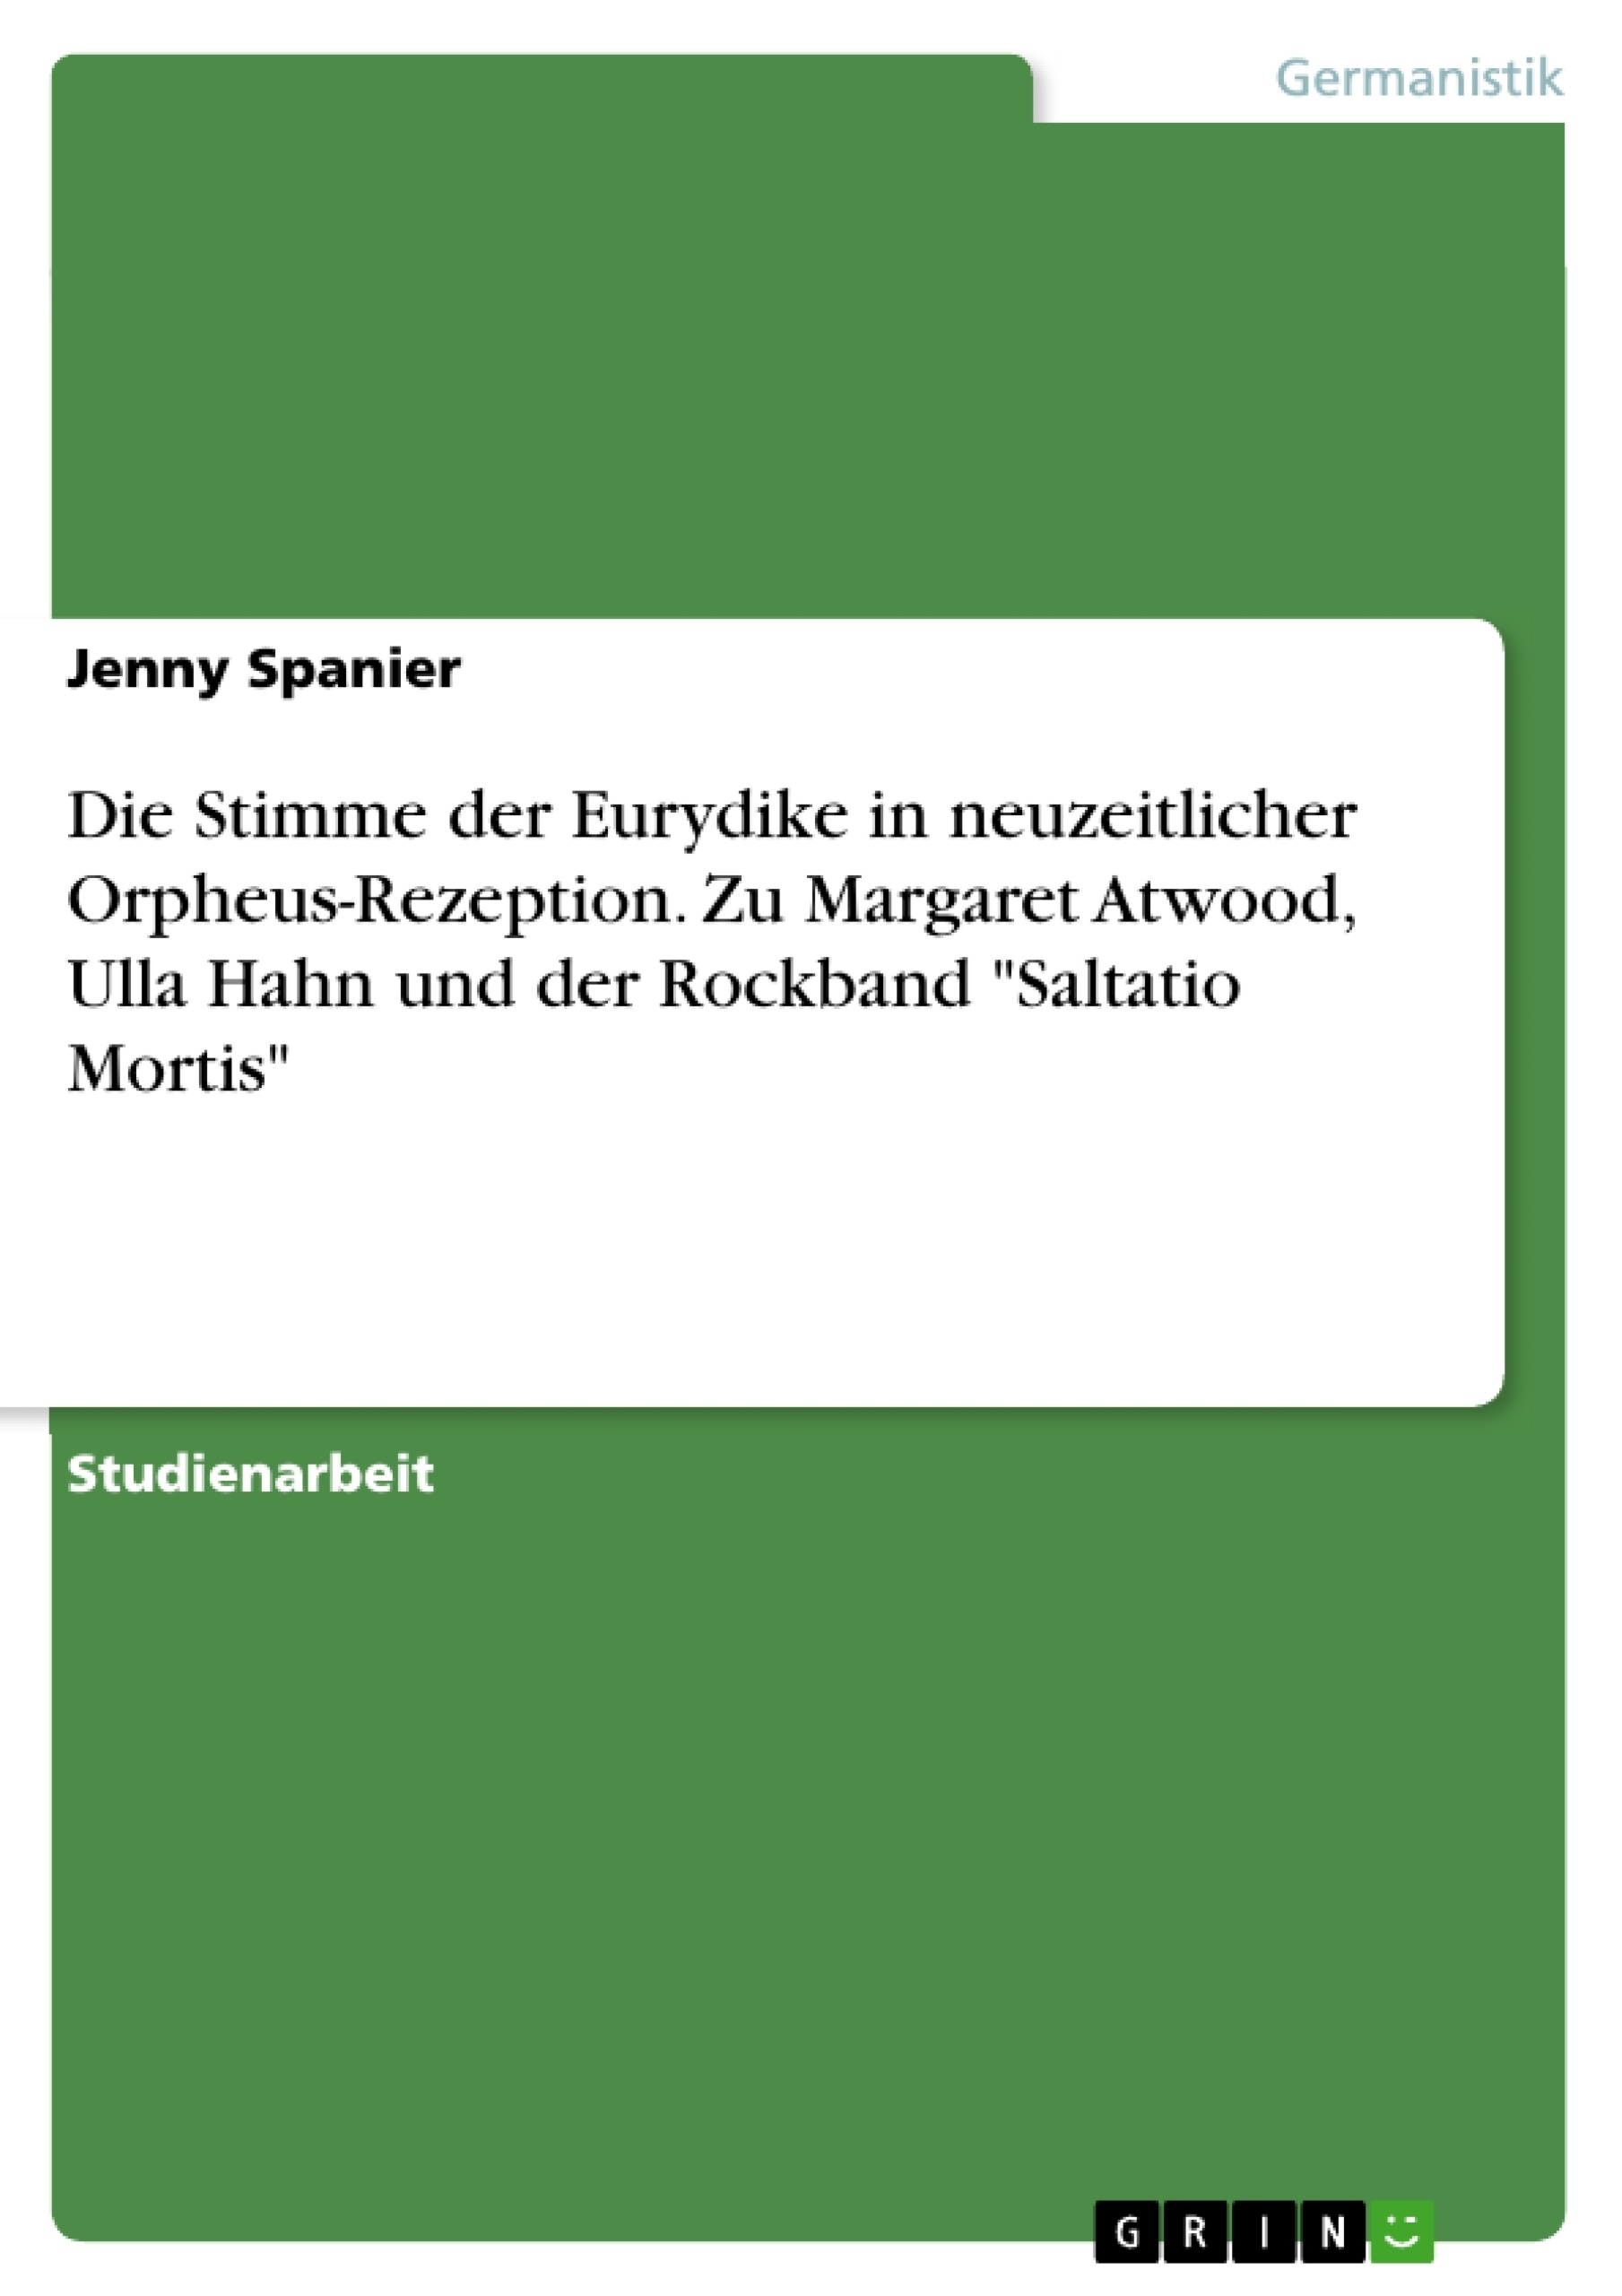 Titel: Die Stimme der Eurydike in neuzeitlicher Orpheus-Rezeption. Zu Margaret Atwood, Ulla Hahn und der Rockband "Saltatio Mortis"